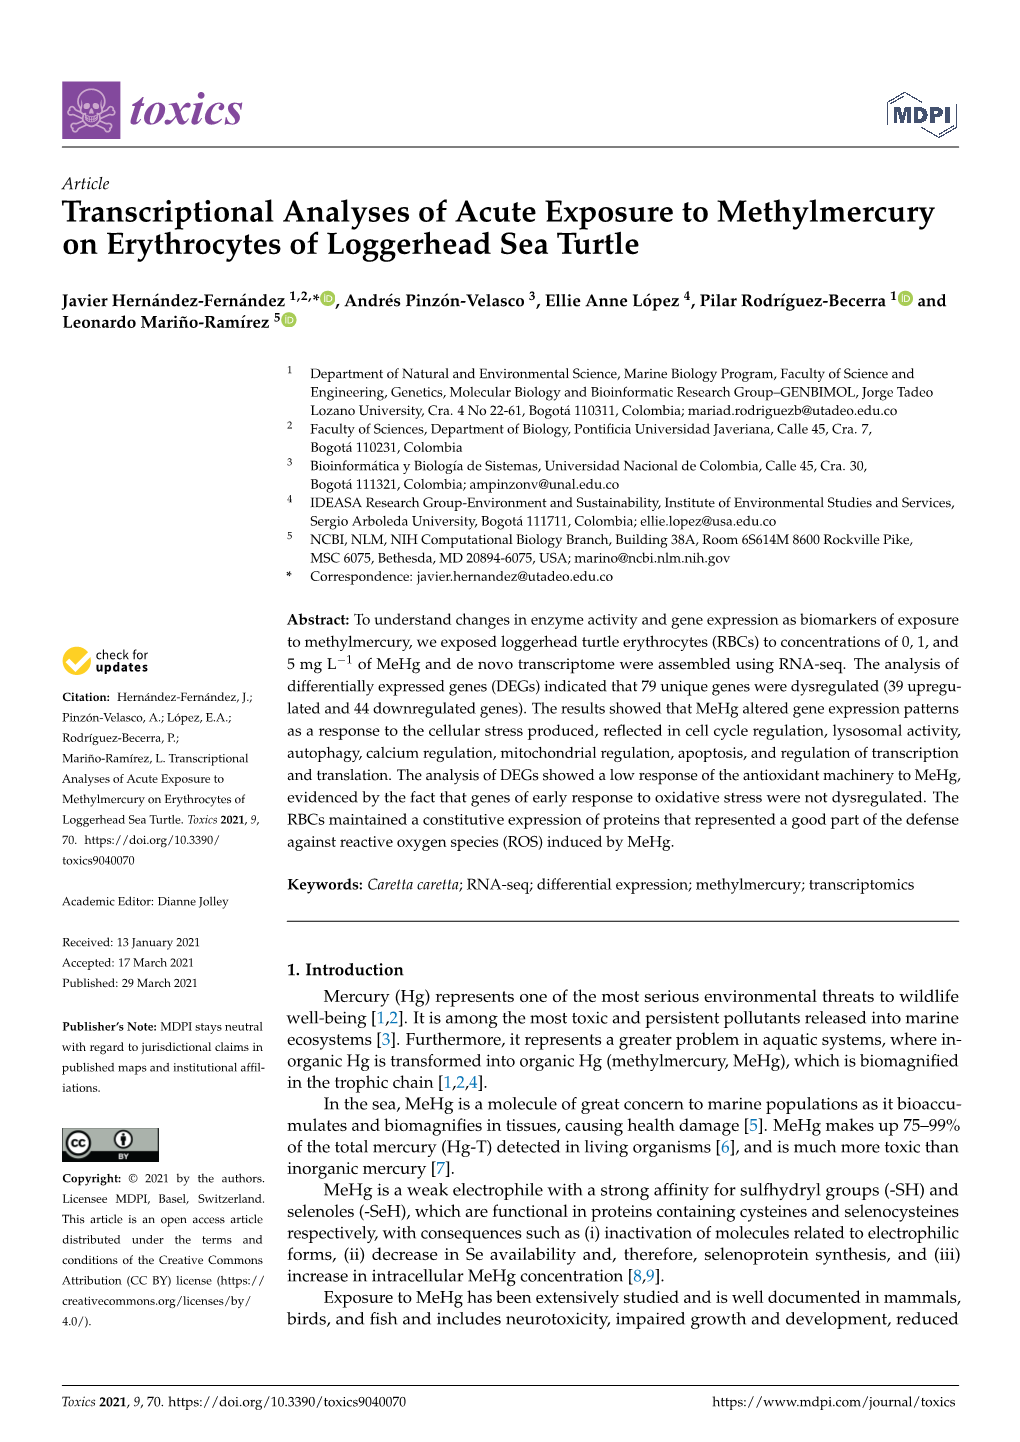 Transcriptional Analyses of Acute Exposure to Methylmercury on Erythrocytes of Loggerhead Sea Turtle